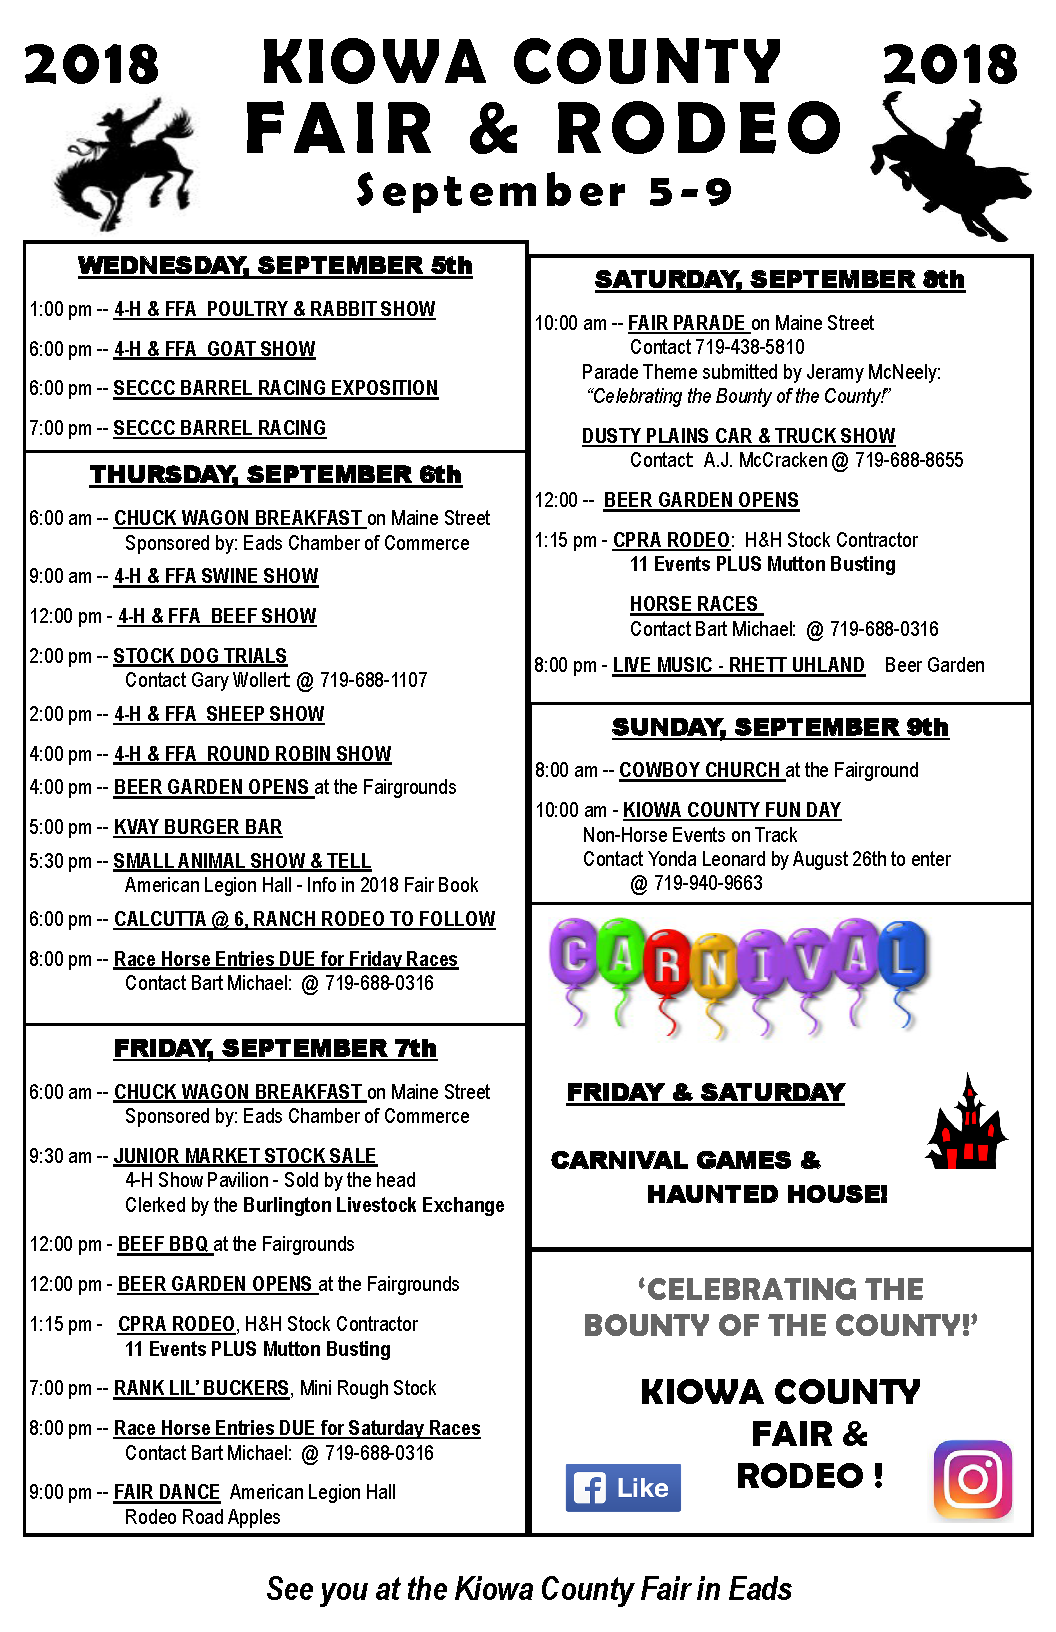 See all the events scheduled for the 2018 Kiowa County Fair Kiowa